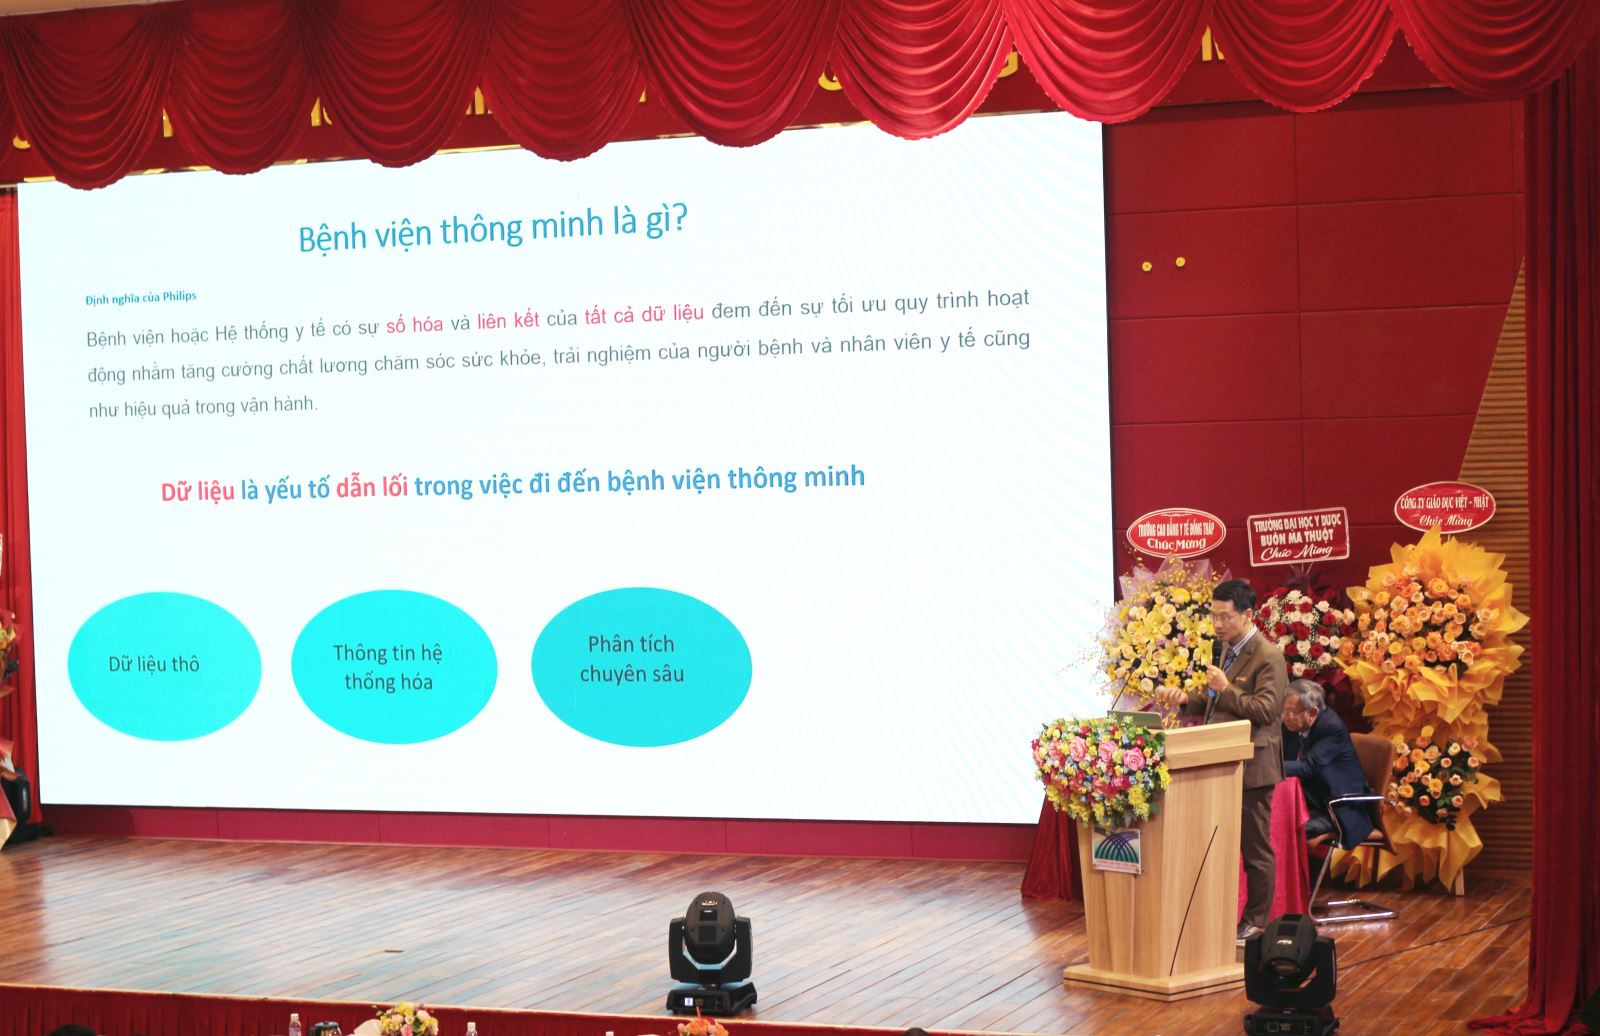 Bác sĩ Chuyên khoa 2 Nguyễn Trần Nam - Phó Giám đốc Bệnh viện Nhi đồng Thành phố (Thành phố Hồ Chí Minh) nêu ứng dụng công nghệ mới chẩn đoán hình ảnh trong bệnh viện.